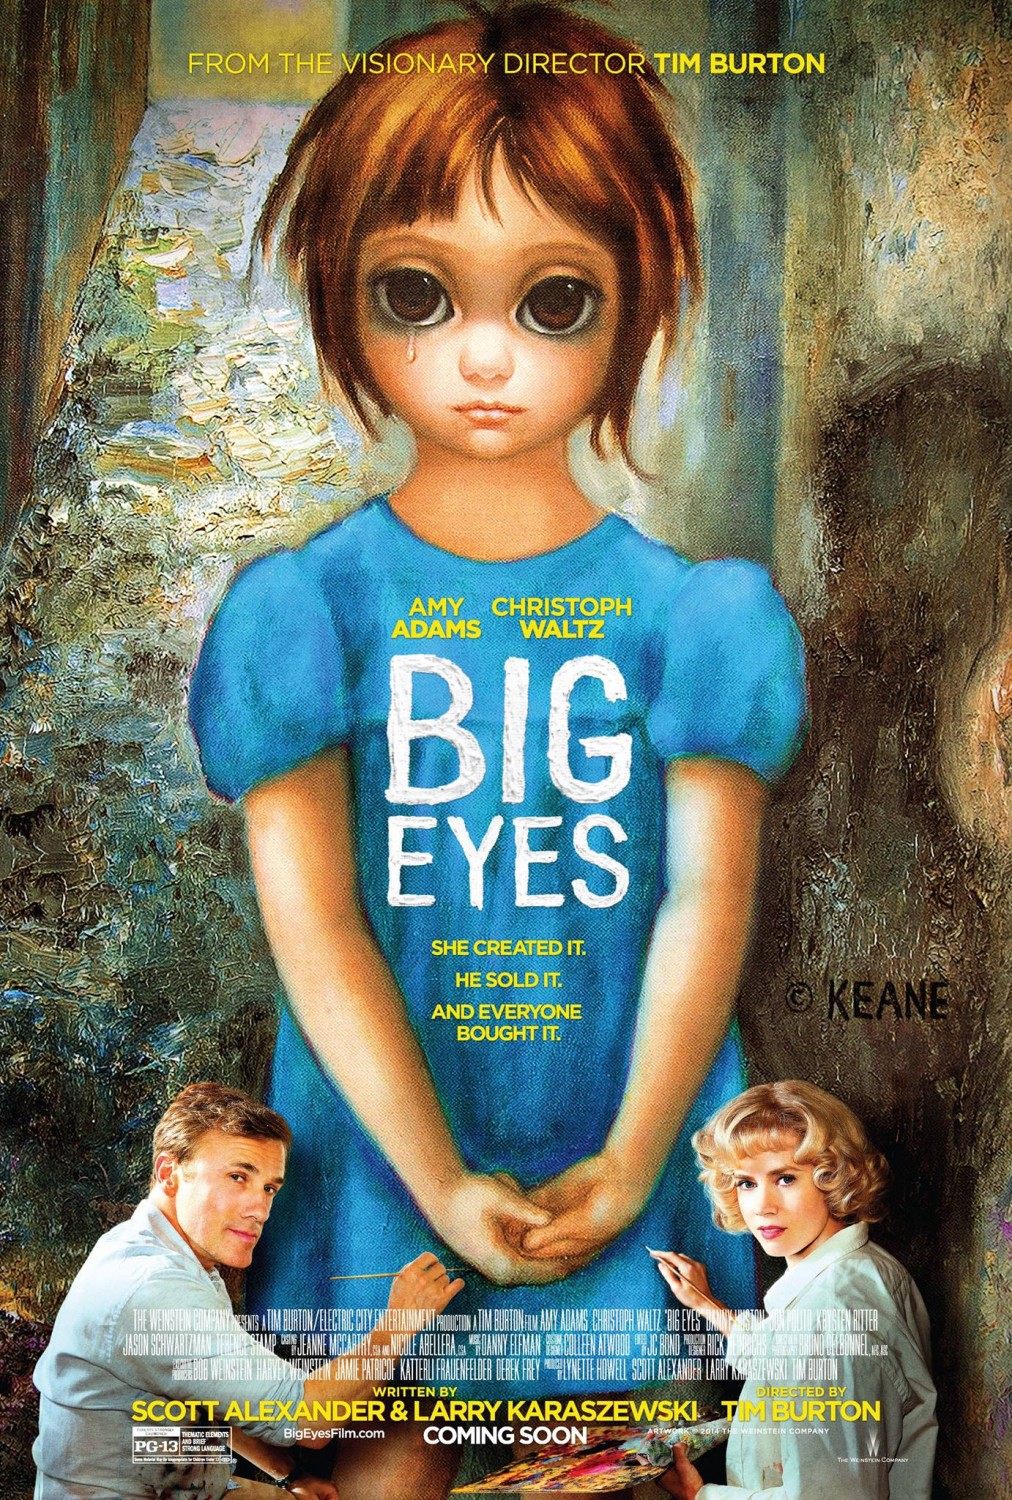 Постер - Большие глаза: 1012x1500 / 706 Кб